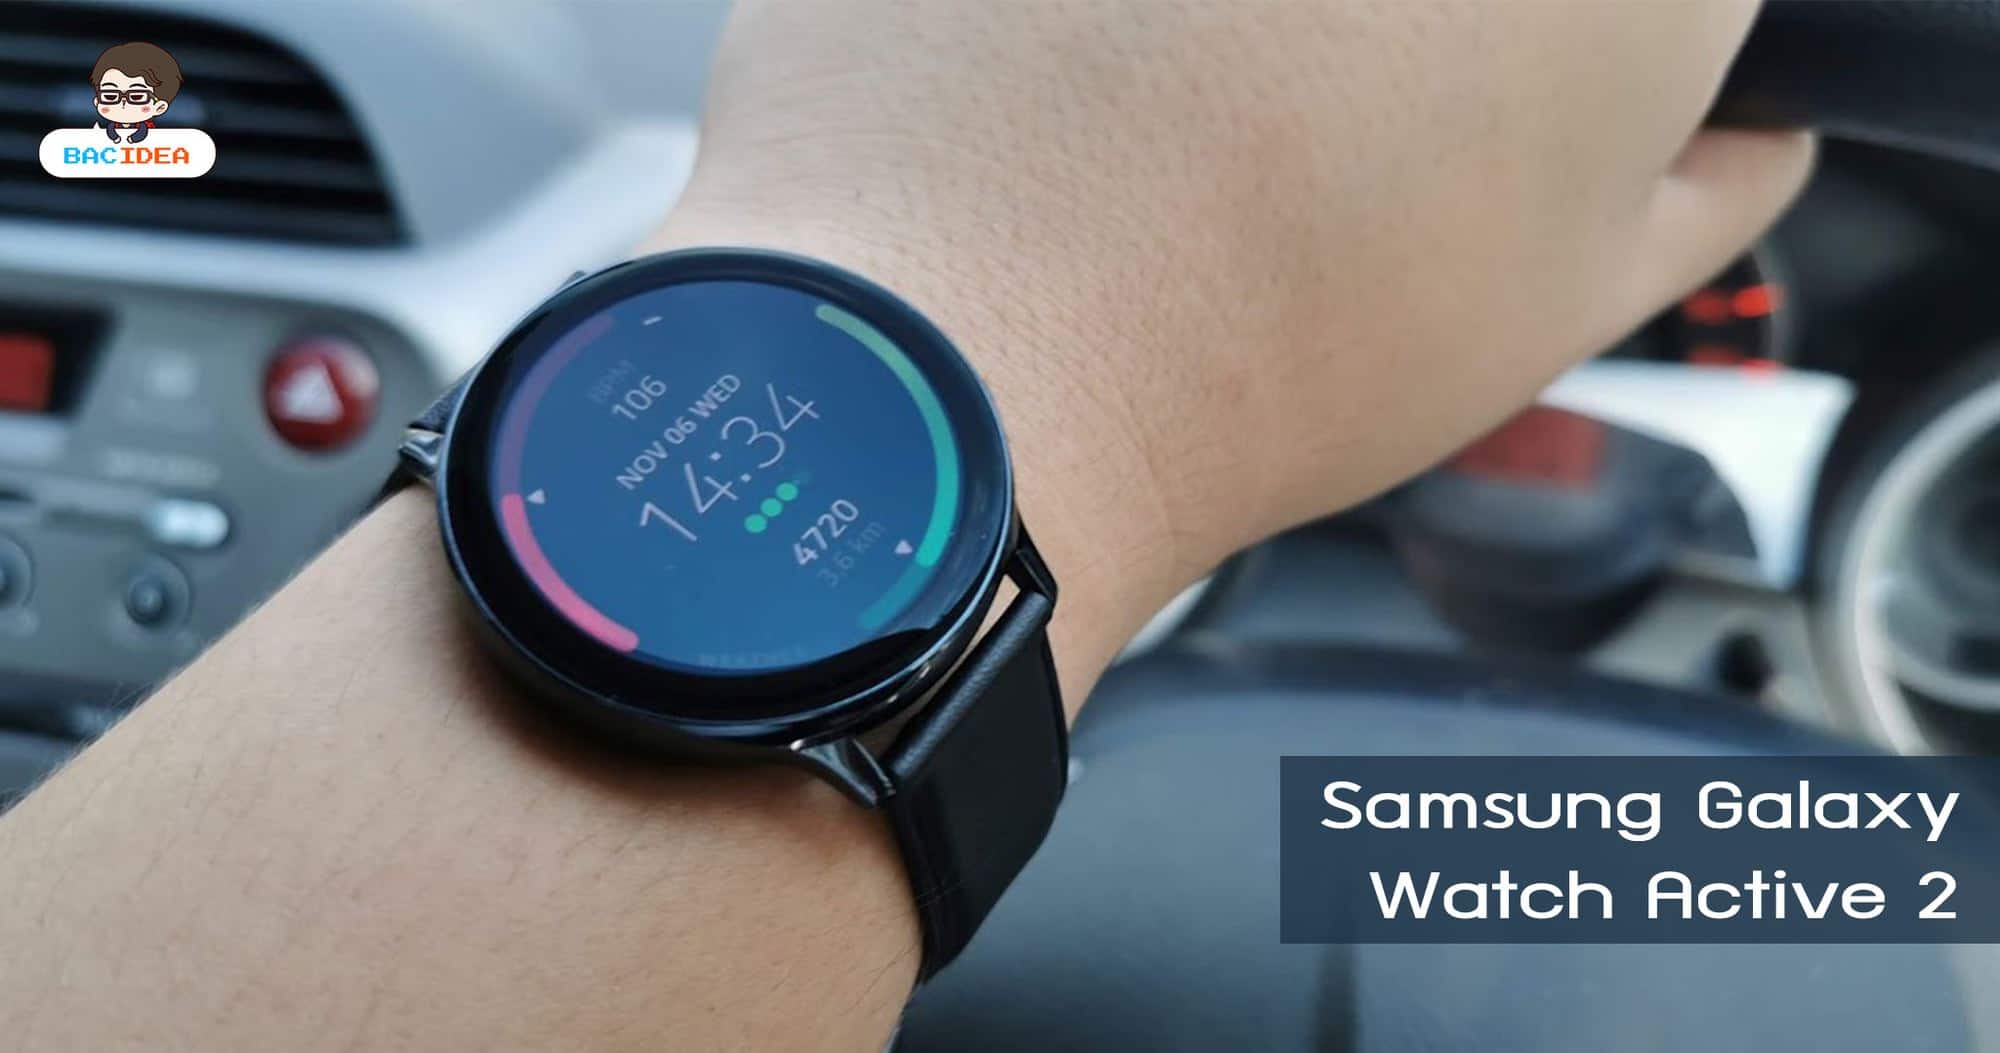 รีวิว Samsung Galaxy Watch Active 2 | ครบทุกอย่างในตัวเดียว ลงแอปได้ โทรได้ ไม่ต้องพึ่งสมาร์ทโฟน 1